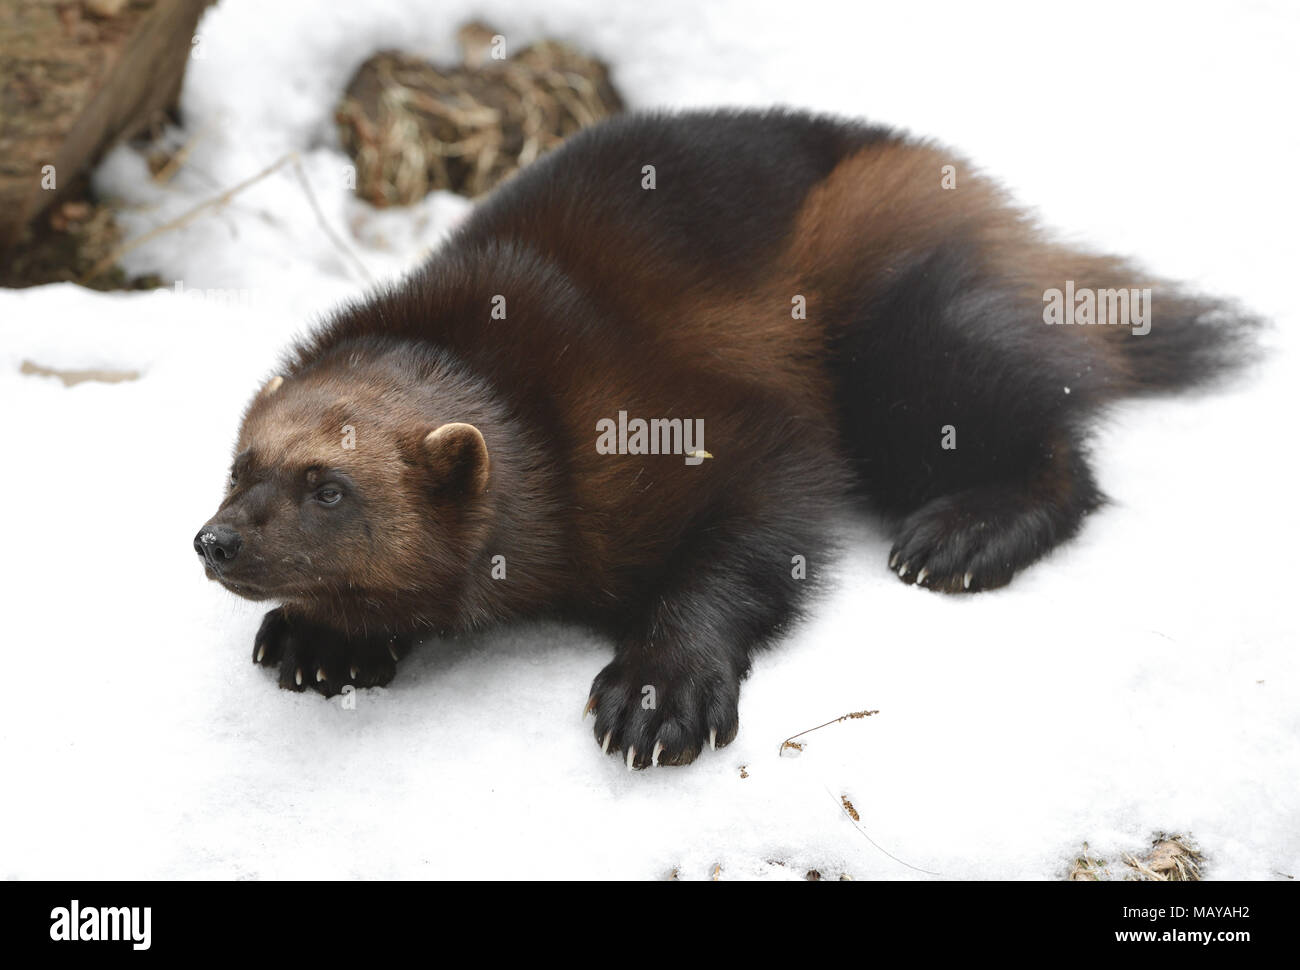 Lobezno, el Gulo Gulo gulo (es América para 'glotón'), también conocido como el glotón, carcajou, skunk bear, o quickhatch, sobre nieve (enfoque en el hocico) Foto de stock